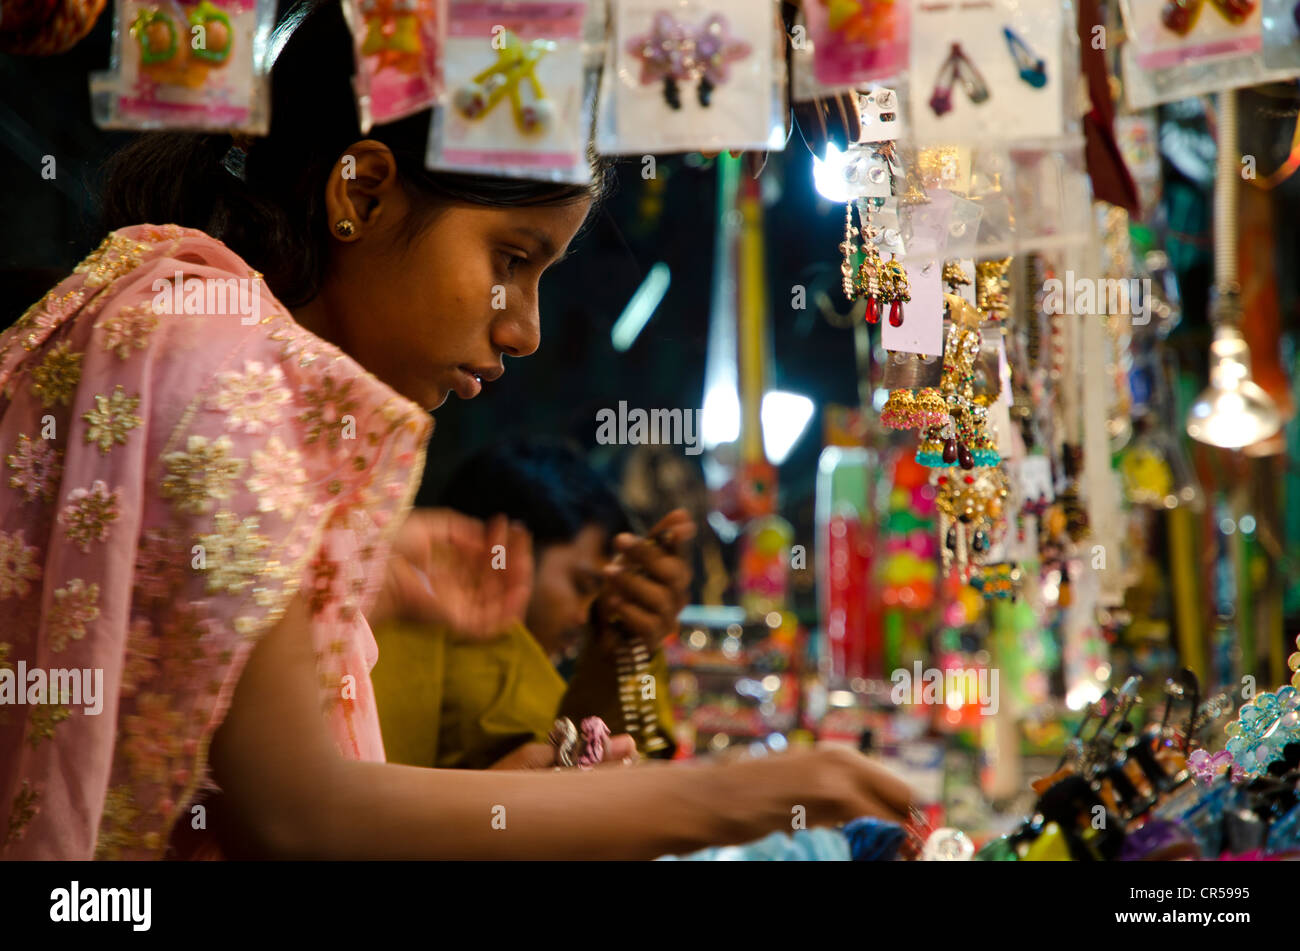 Young woman looking at bangles at street market, Kolkata, West Bengal, India, Asia Stock Photo